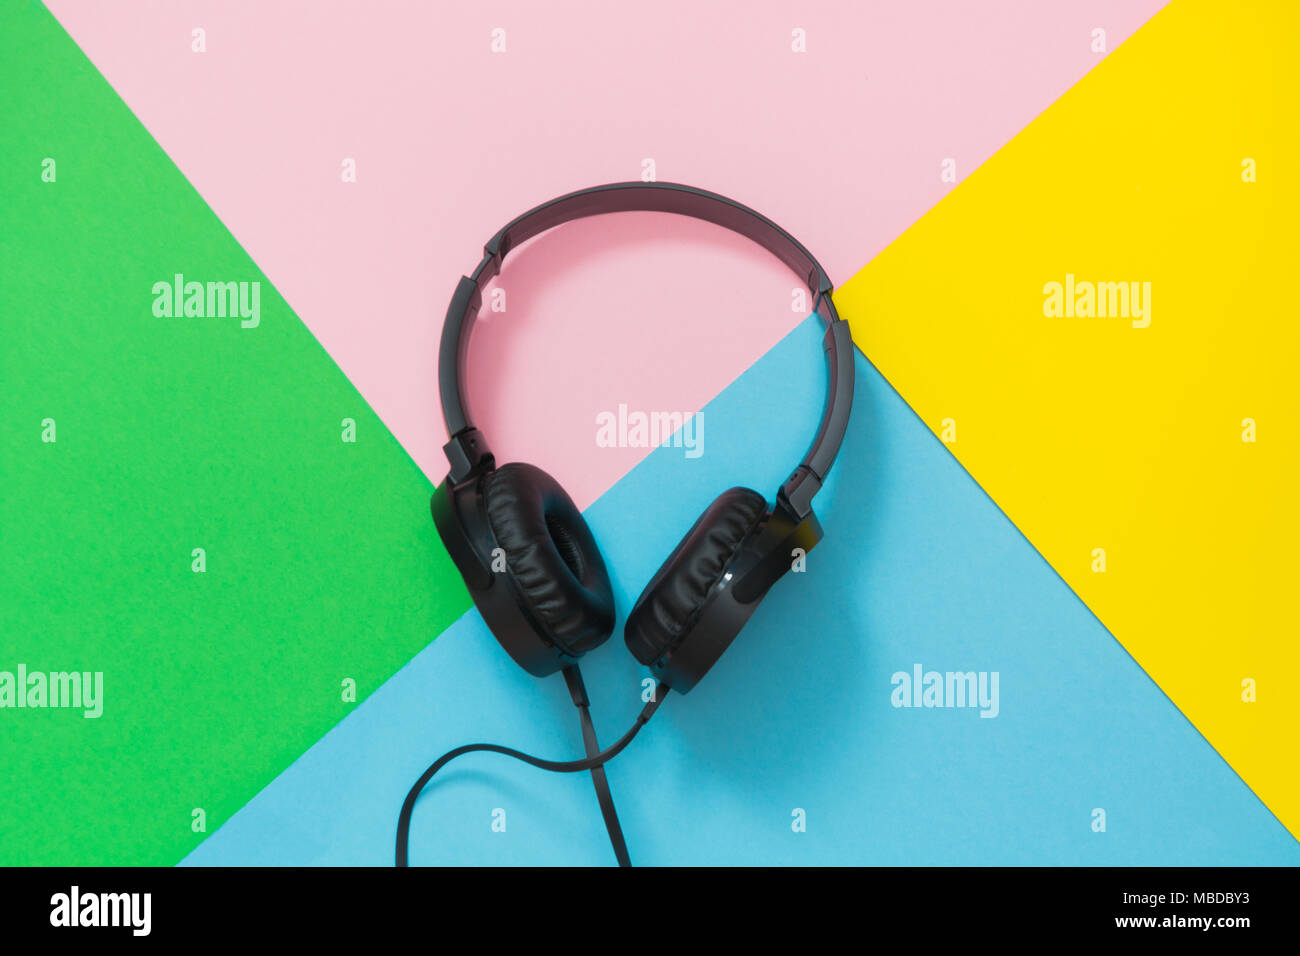 Estilo moderno negro auriculares en fondo de colores. Foto de stock